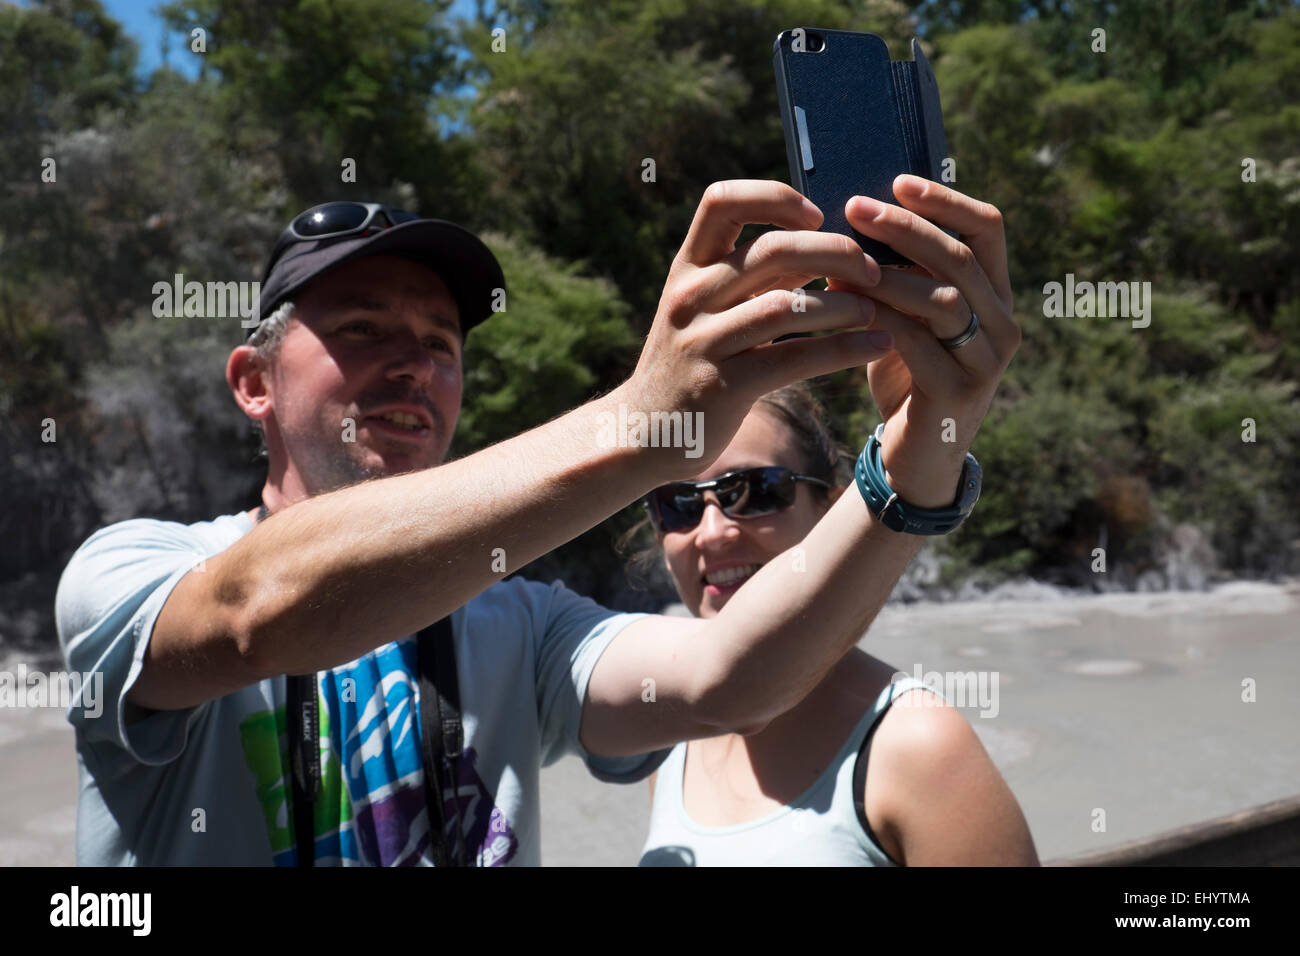 Y Broter siser haciendo un selfie con teléfono celular Foto de stock